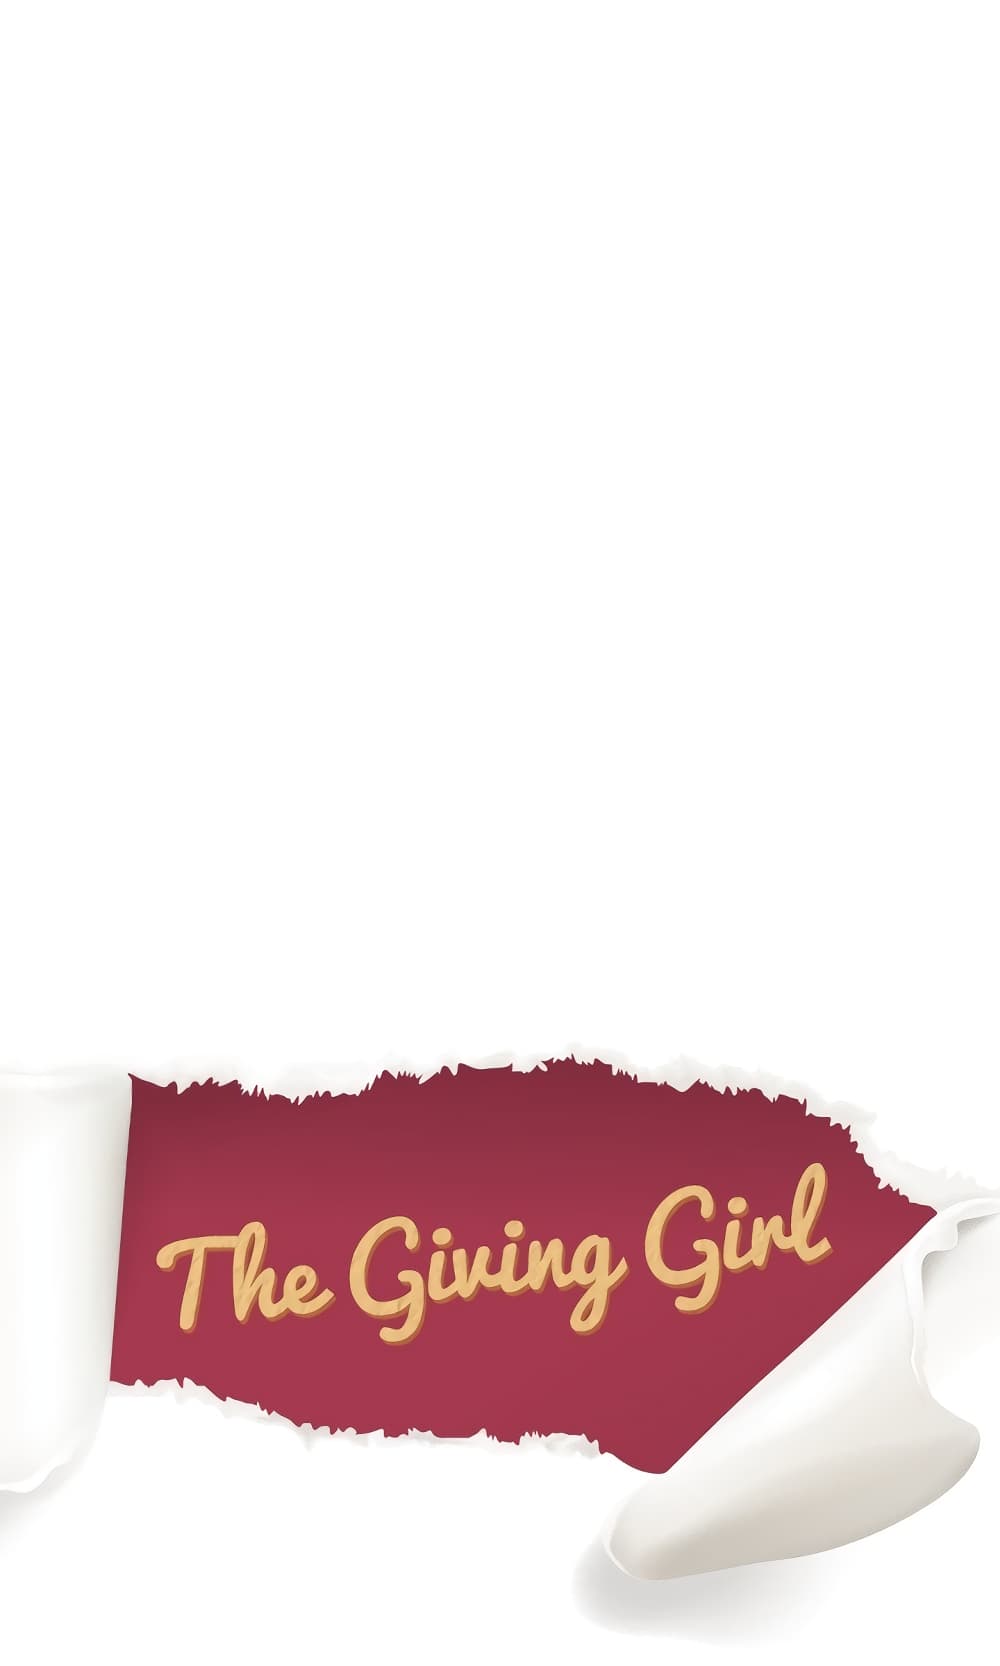 Giving Girl 2-2